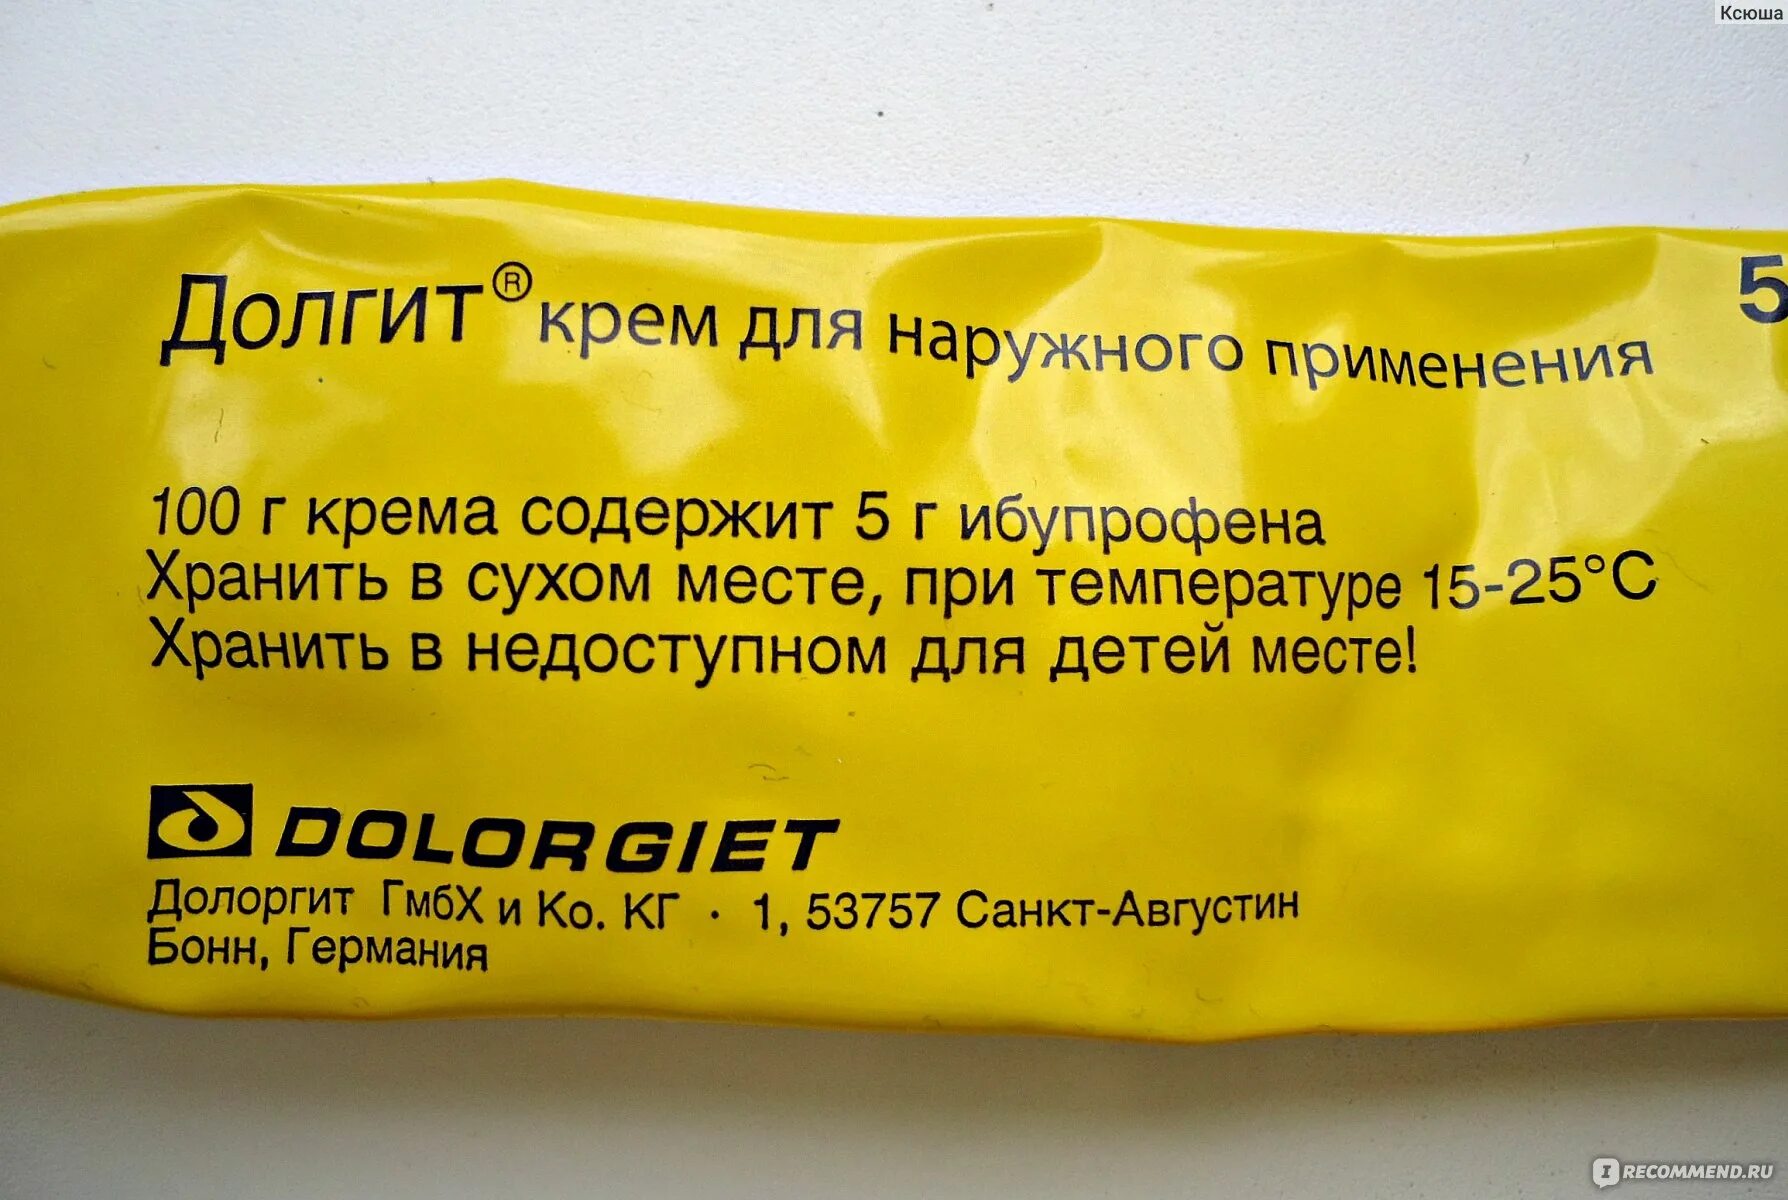 Мазь долгит в желтой упаковке